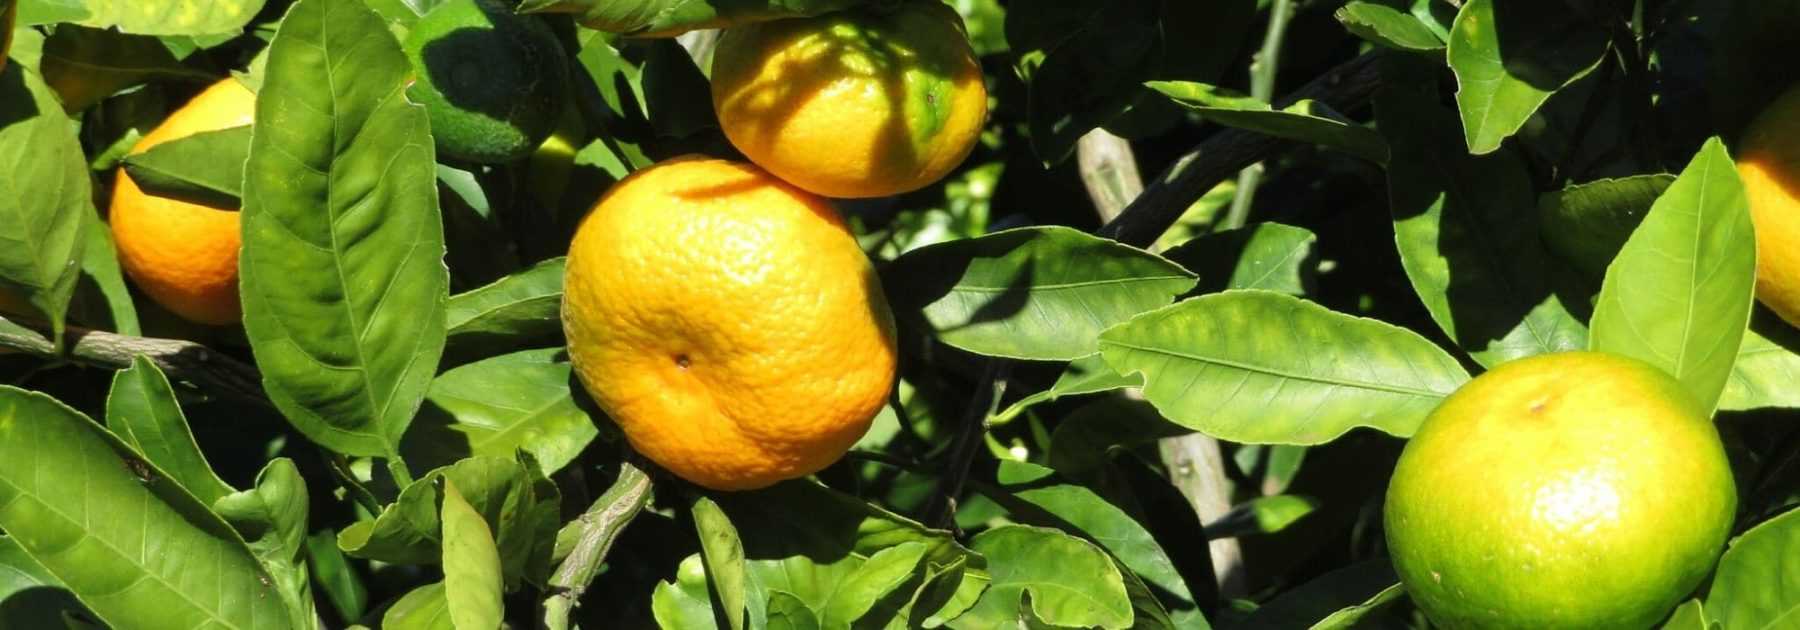 Le mandarinier : planter, entretenir et récolter les fruits